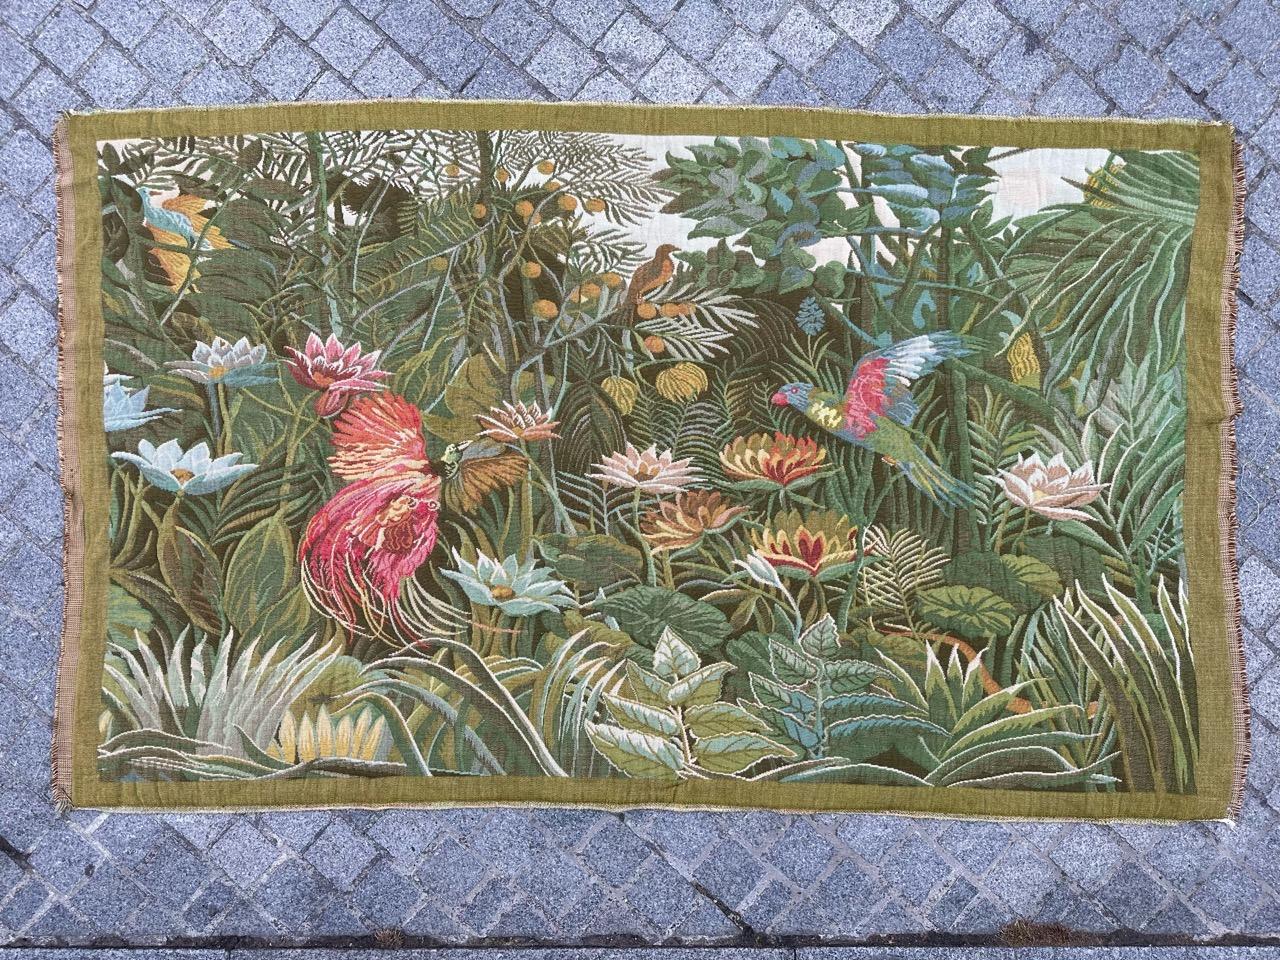 Exquisiter französischer Wandteppich von Henri Rousseau aus der Mitte des Jahrhunderts

Entdecken Sie die zeitlose Schönheit dieses französischen Wandteppichs aus der Mitte des Jahrhunderts mit dem Motiv 